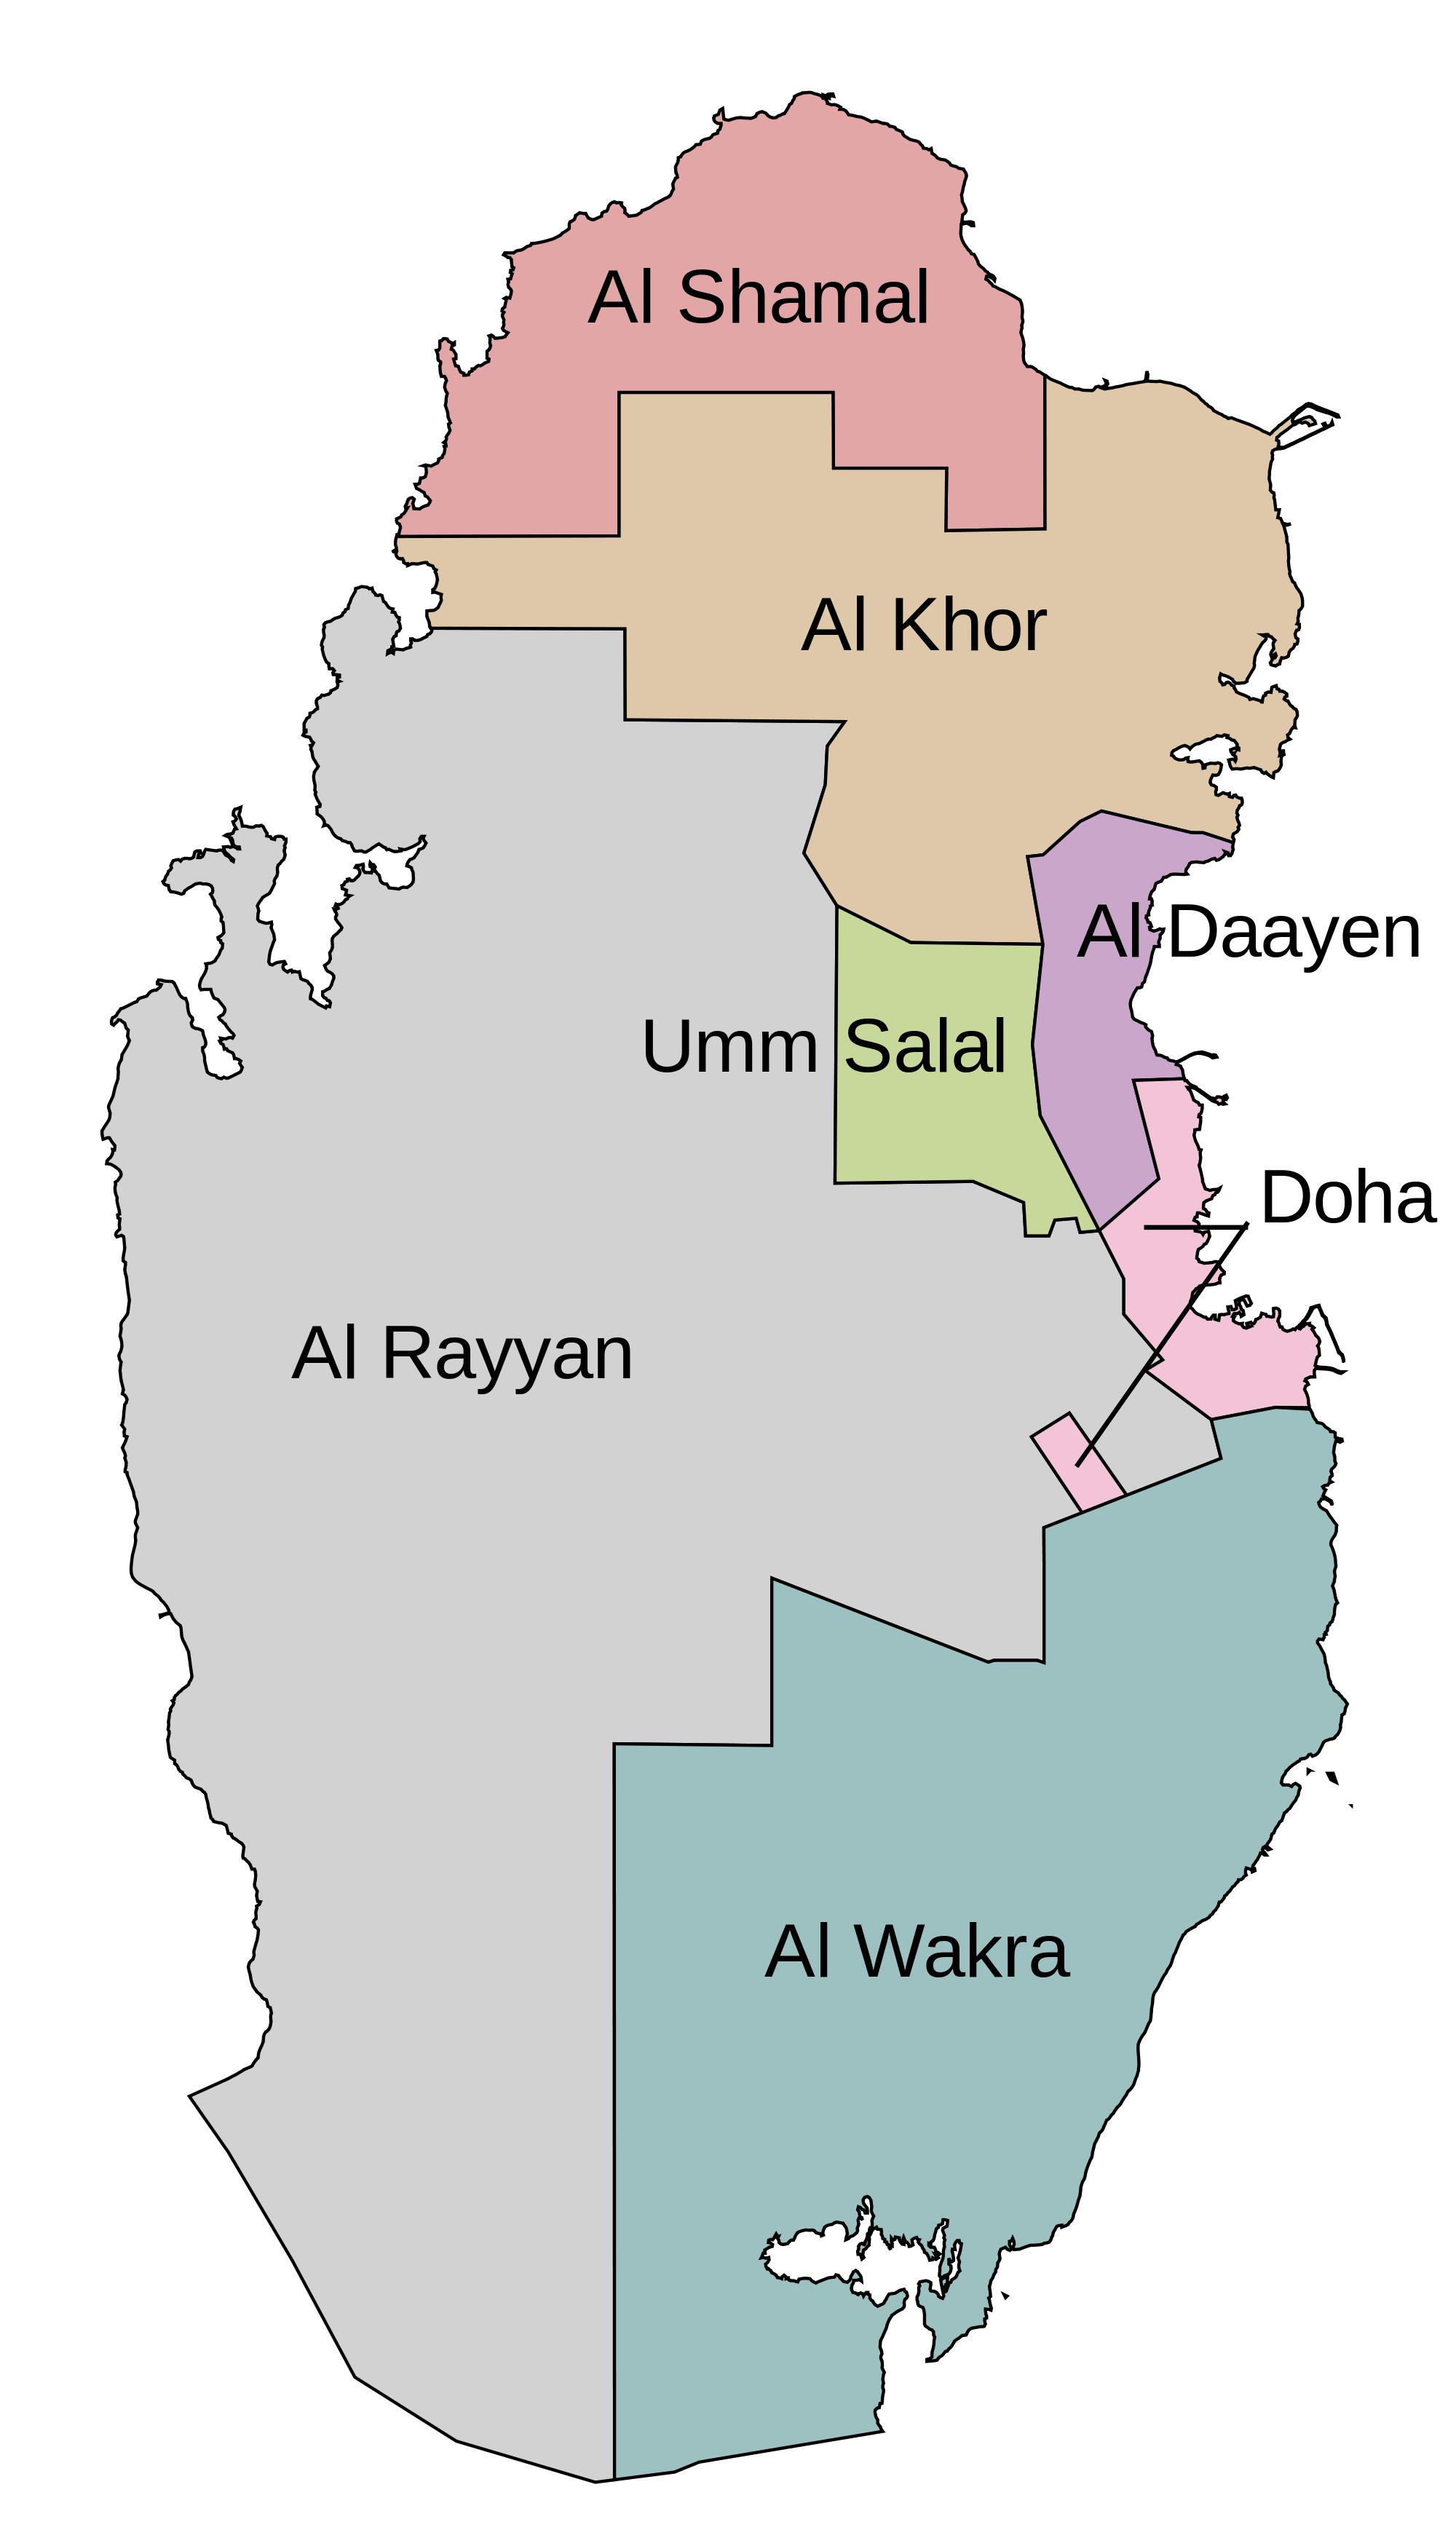 Bạn đang lên kế hoạch cho chuyến du lịch Qatar của mình? Hãy xem bản đồ đô thị Qatar để có cái nhìn tổng quan về các khu vực đô thị, vị trí các điểm du lịch và tìm kiếm giải pháp tốt nhất cho việc đi lại trong thành phố.